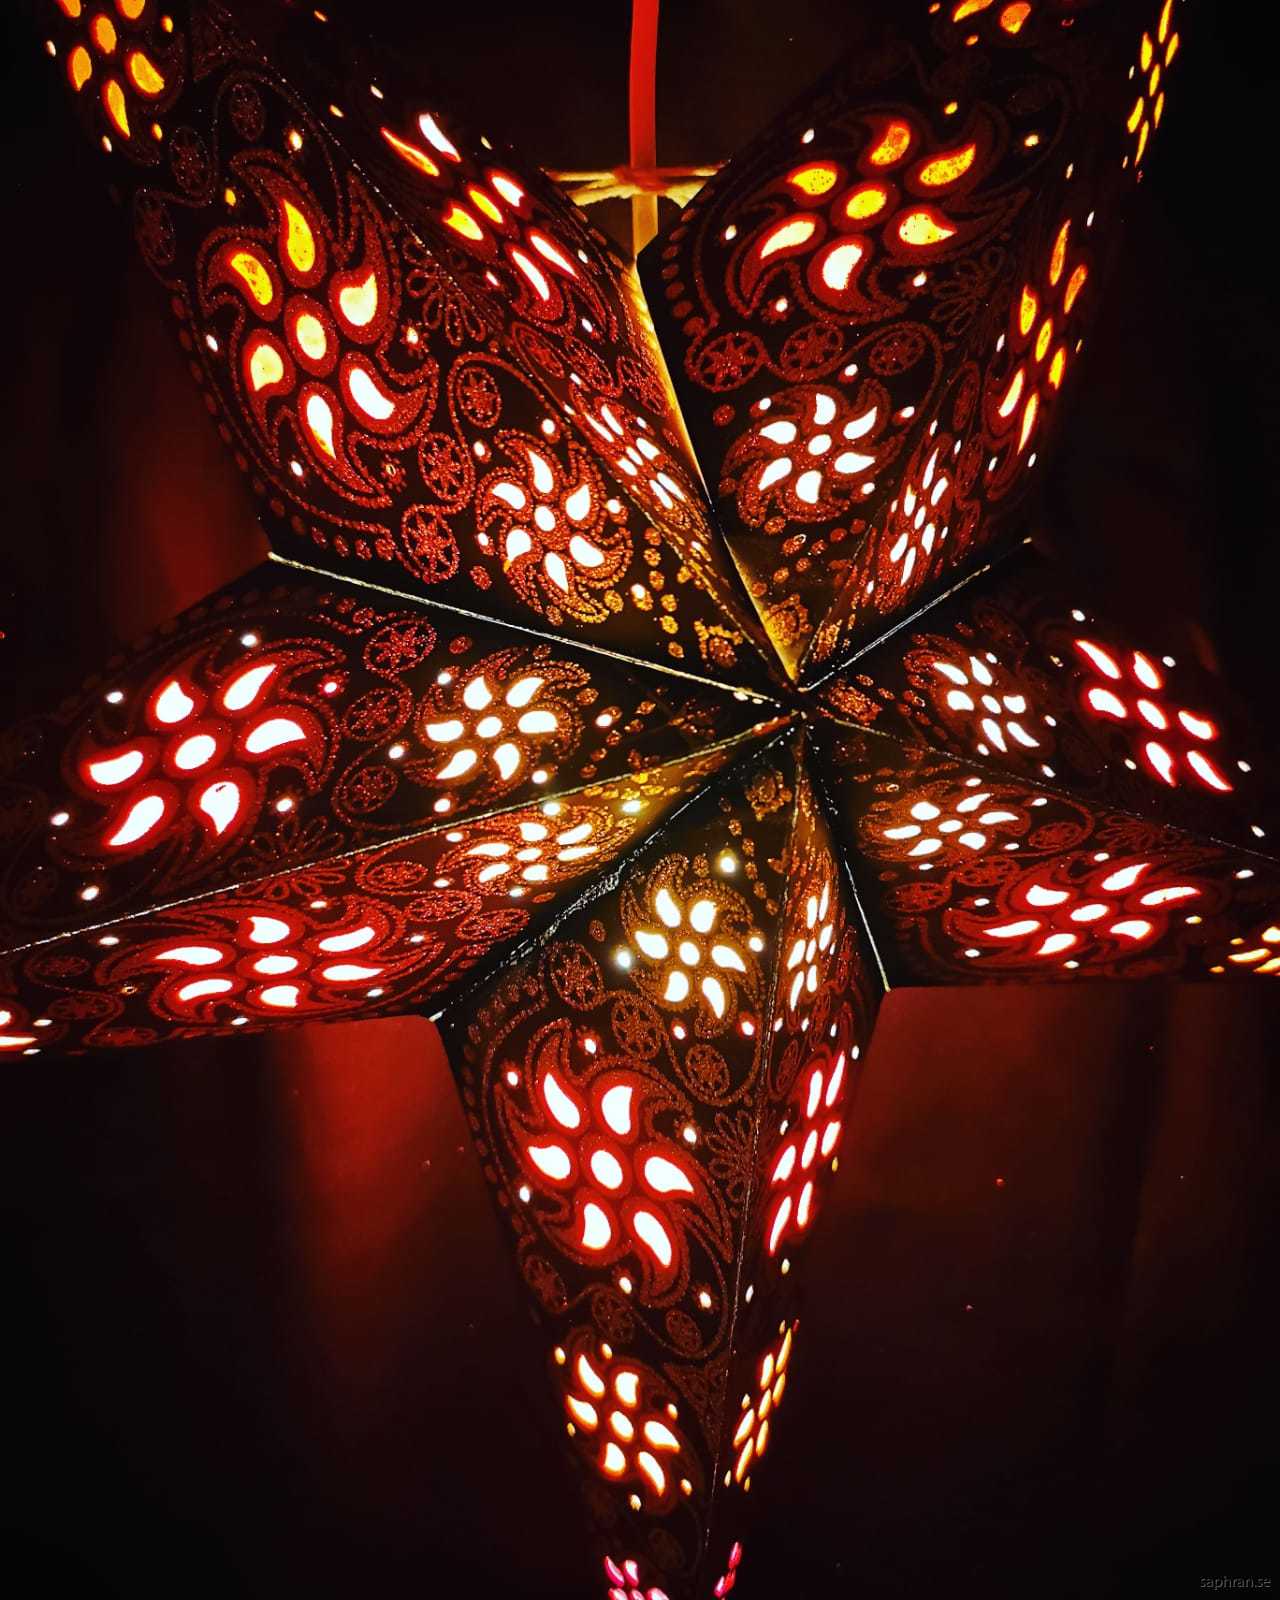 Svart, orientalisk julstjärna med varm, mysigt sken.